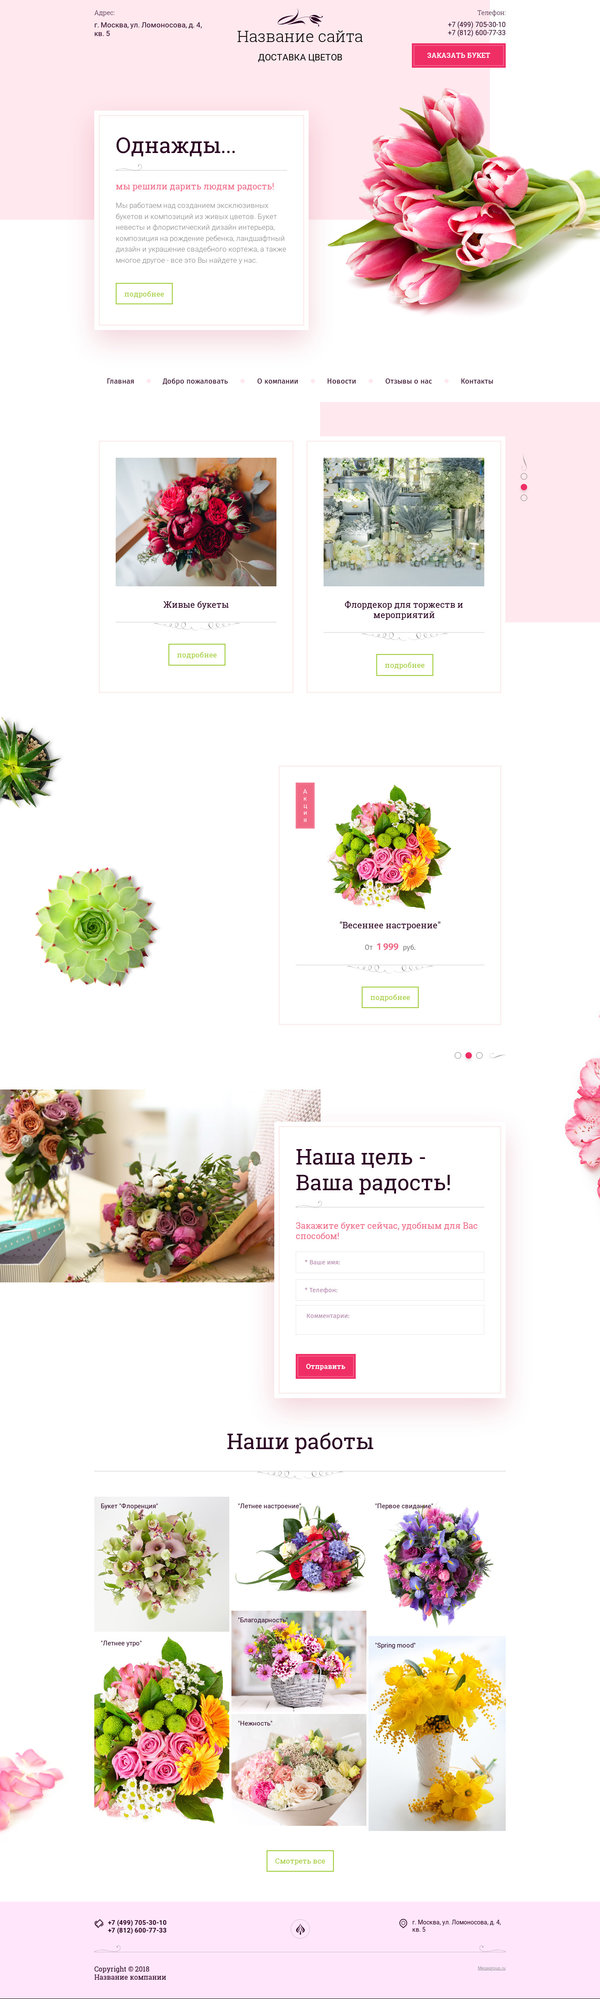 Готовый Сайт-Бизнес № 2038304 - Цветы, растения, доставка цветов (Десктопная версия)